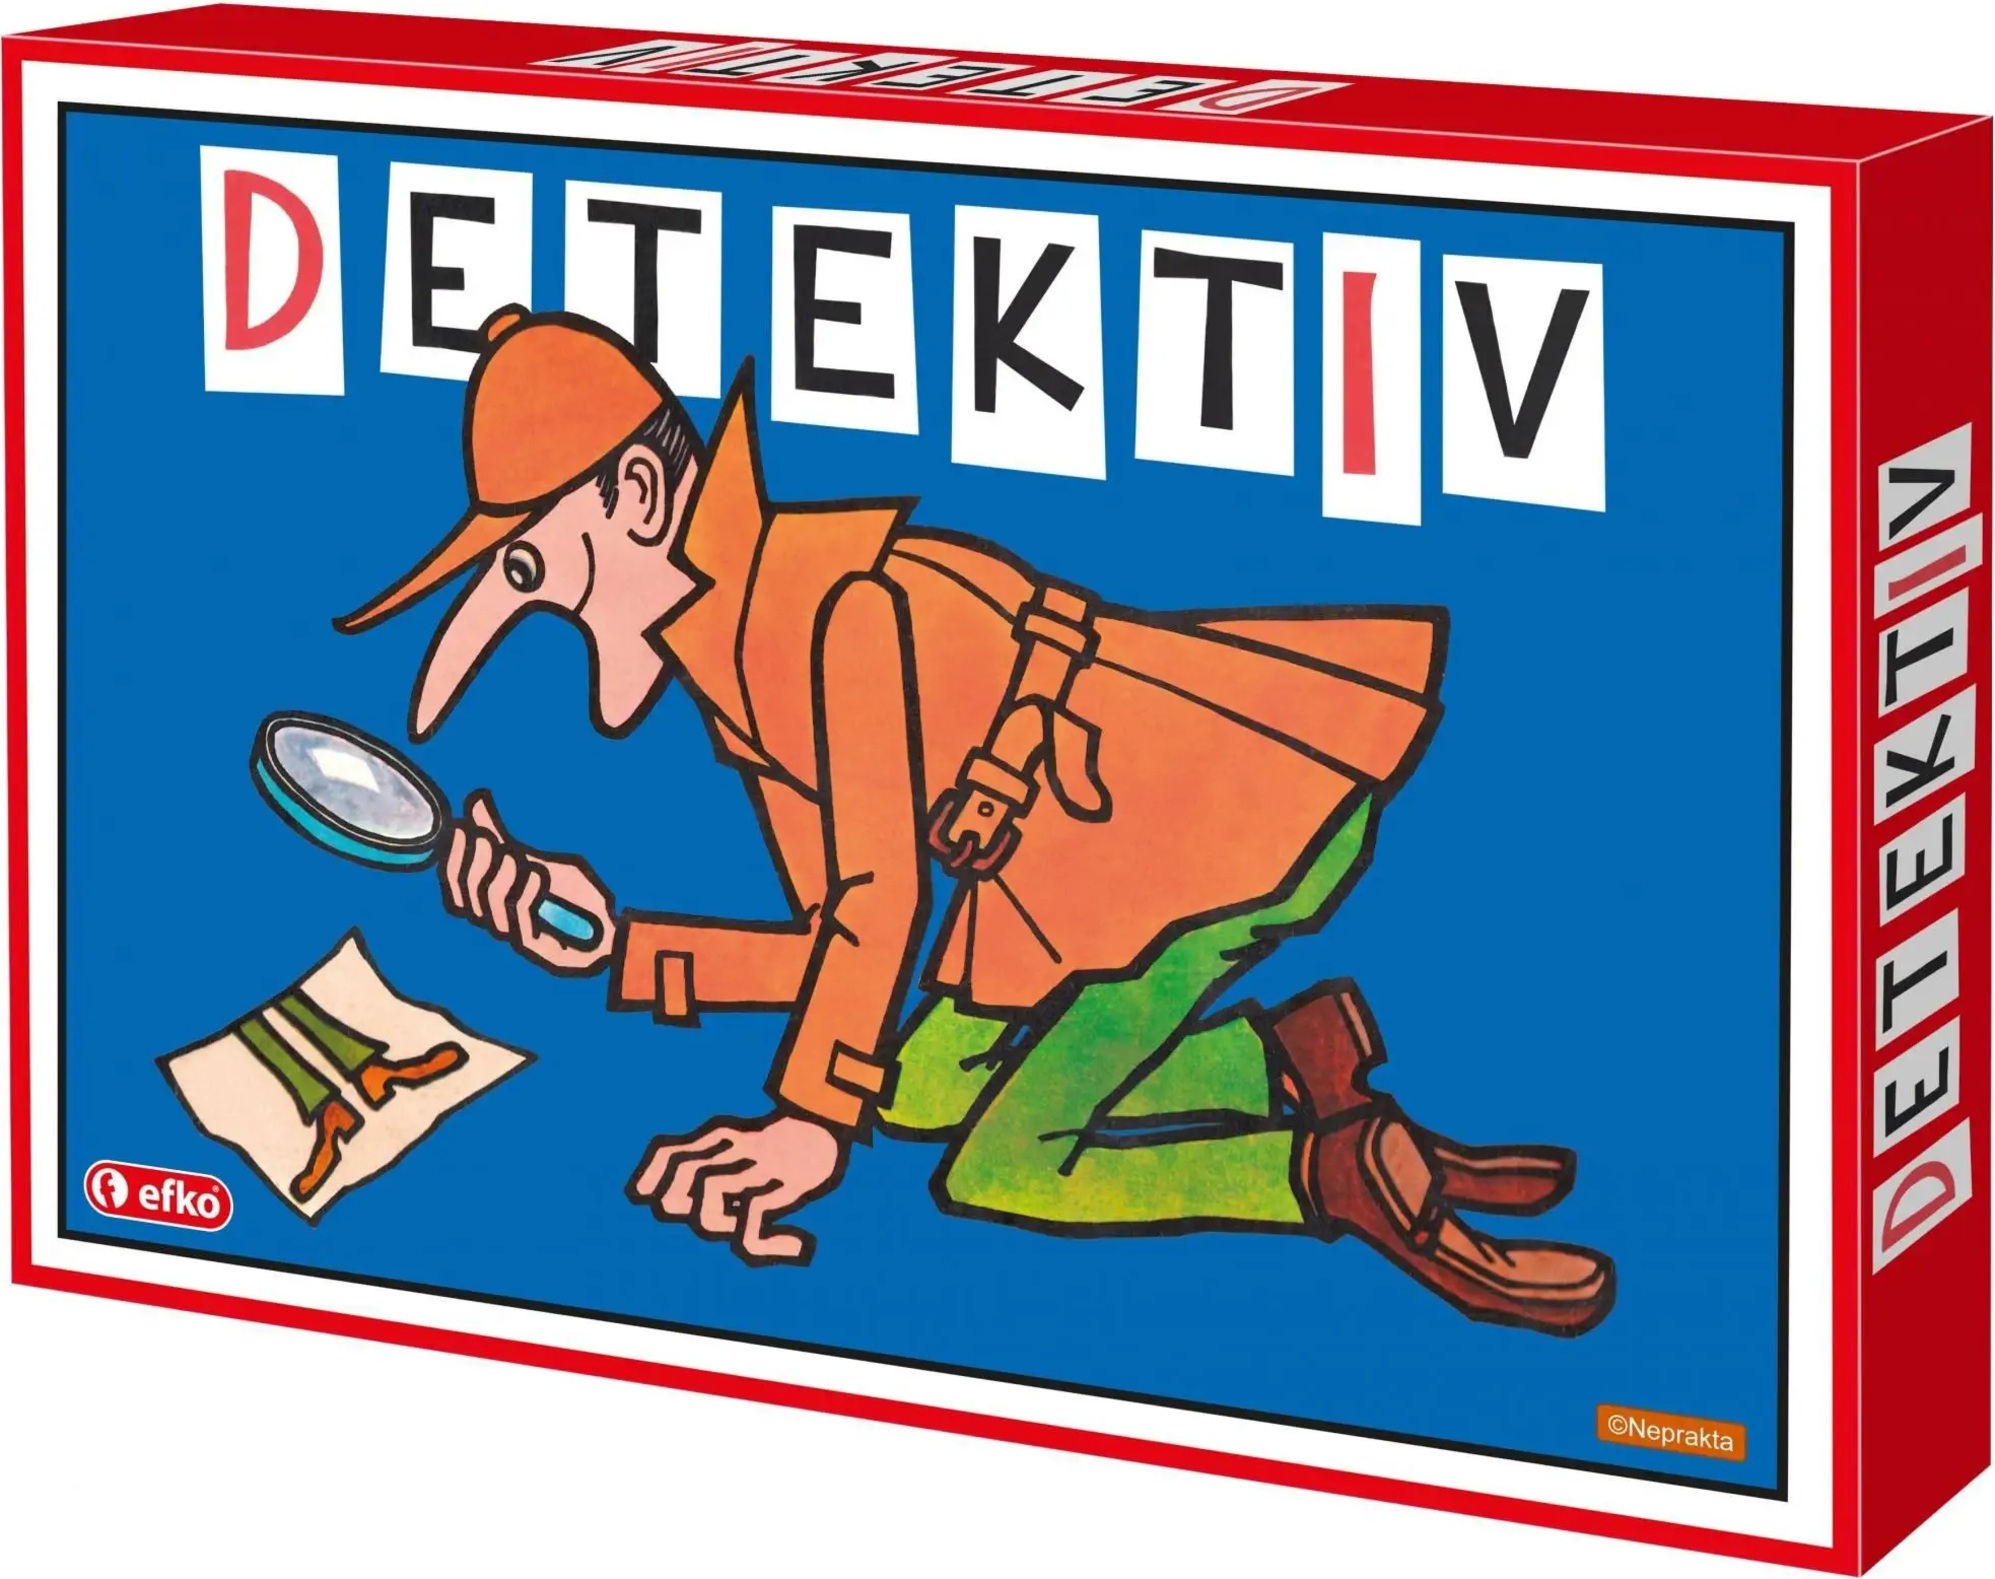 Detektiv - dětská postřehová hra